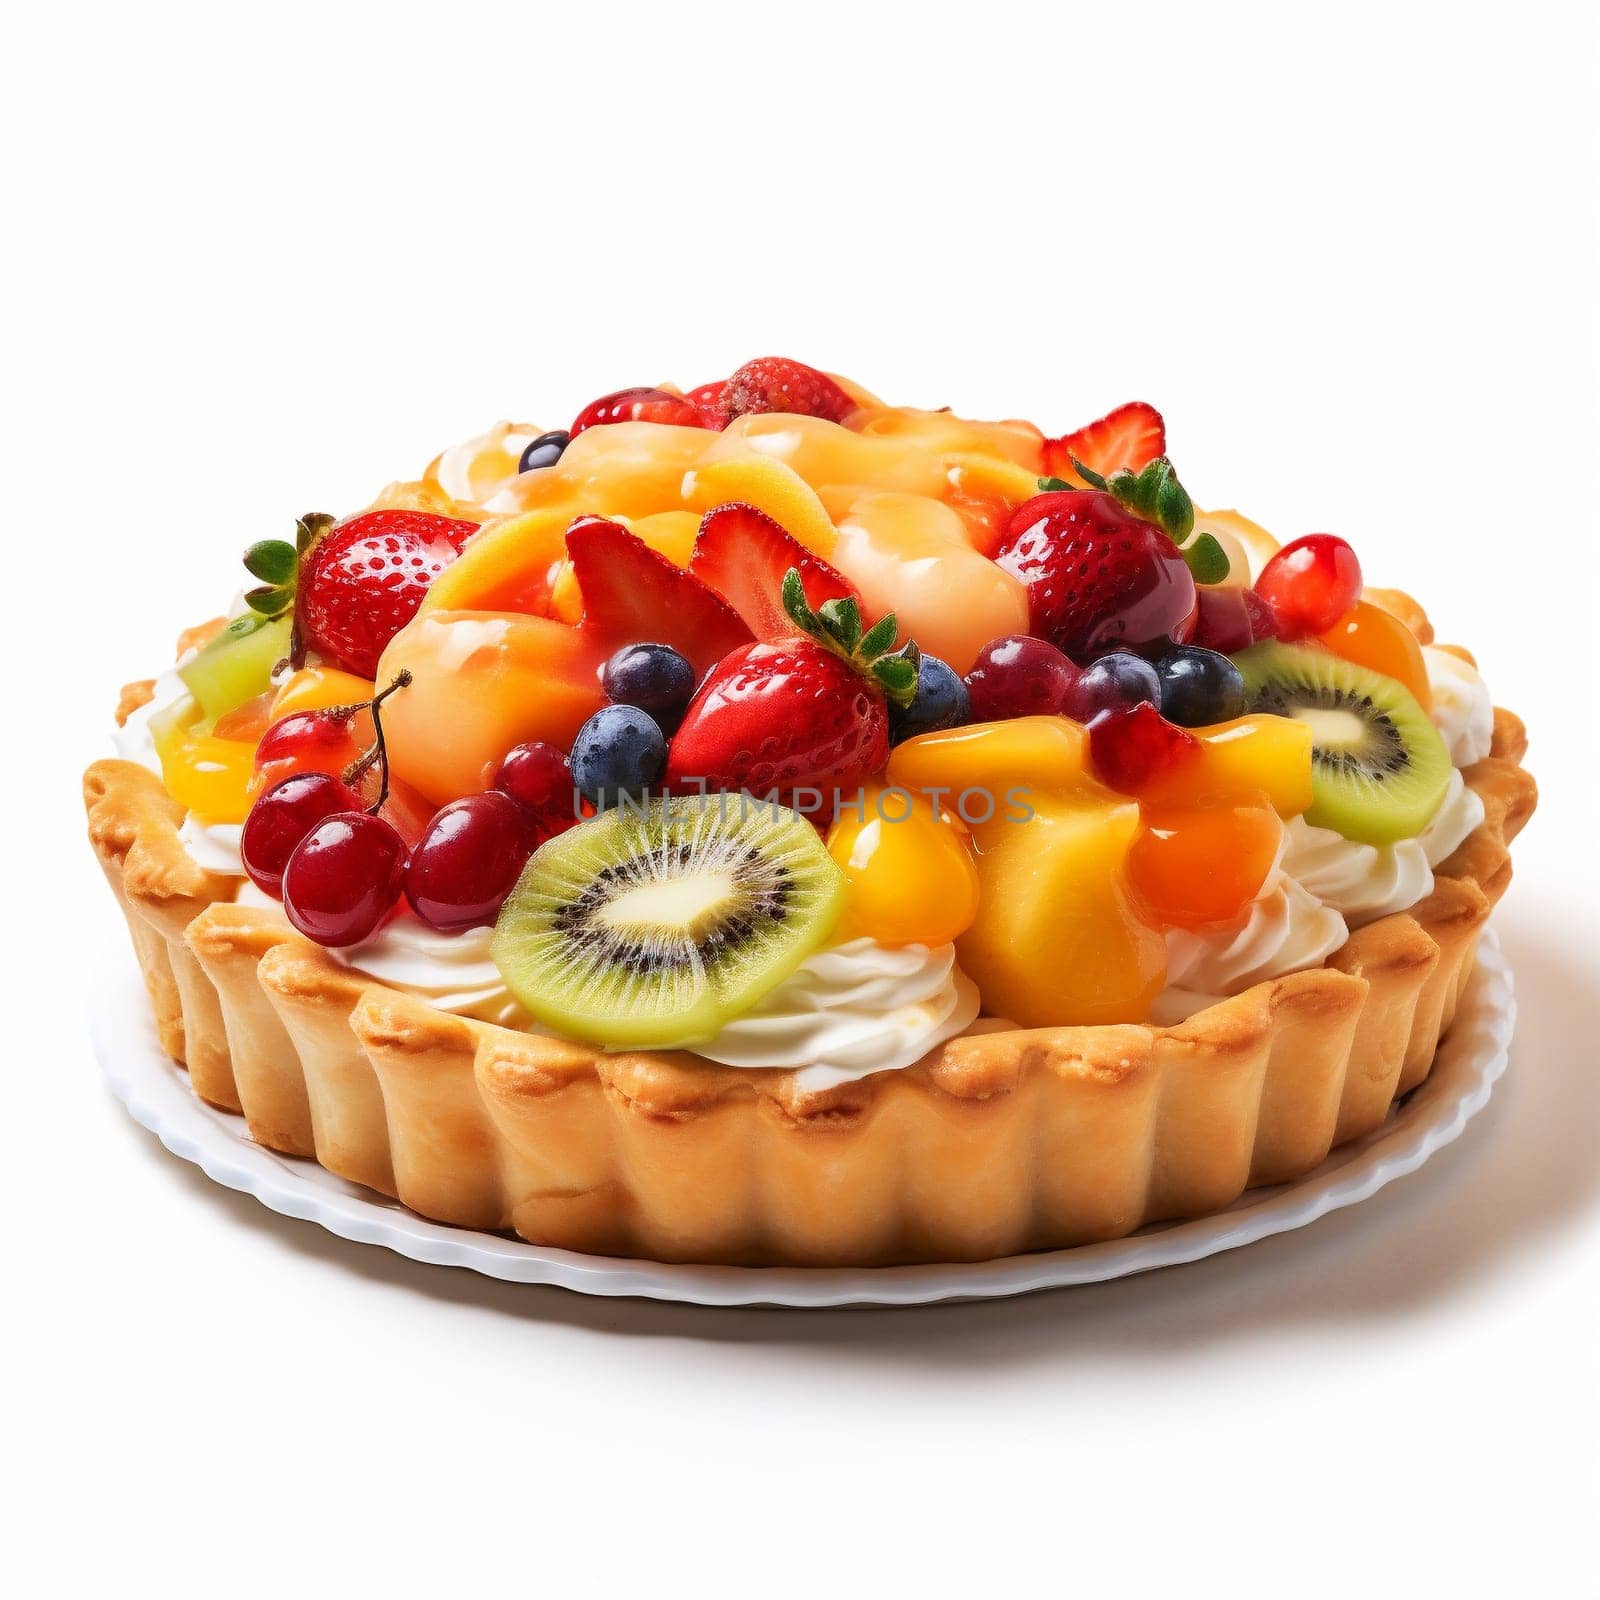 Tasty Fruit Pie on White Background. by Rina_Dozornaya